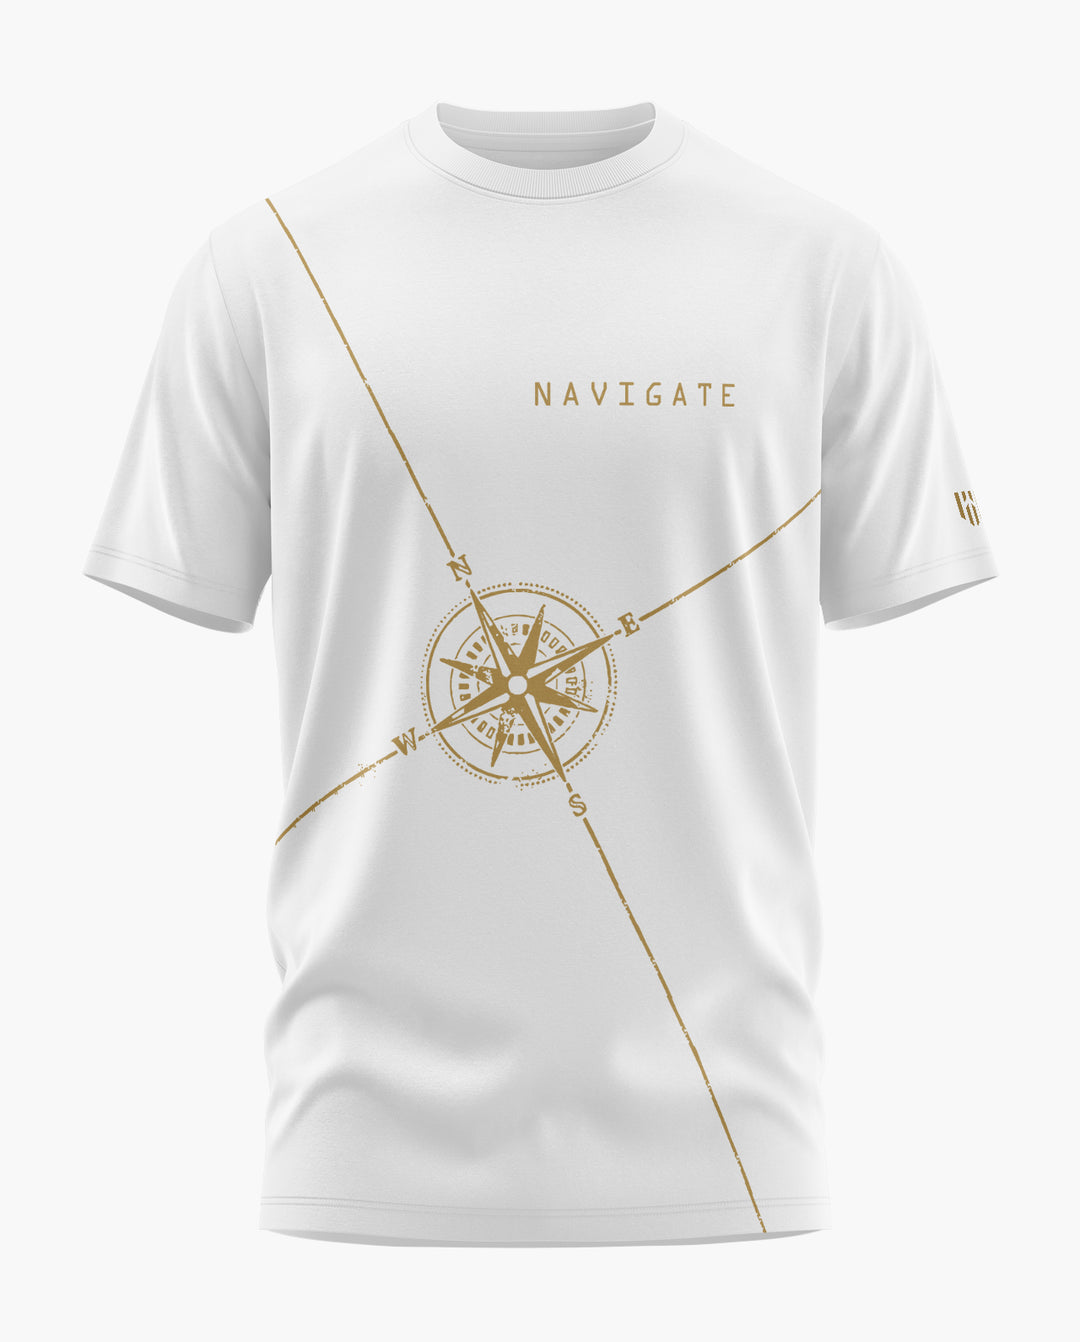 NAVIGATE T-Shirt